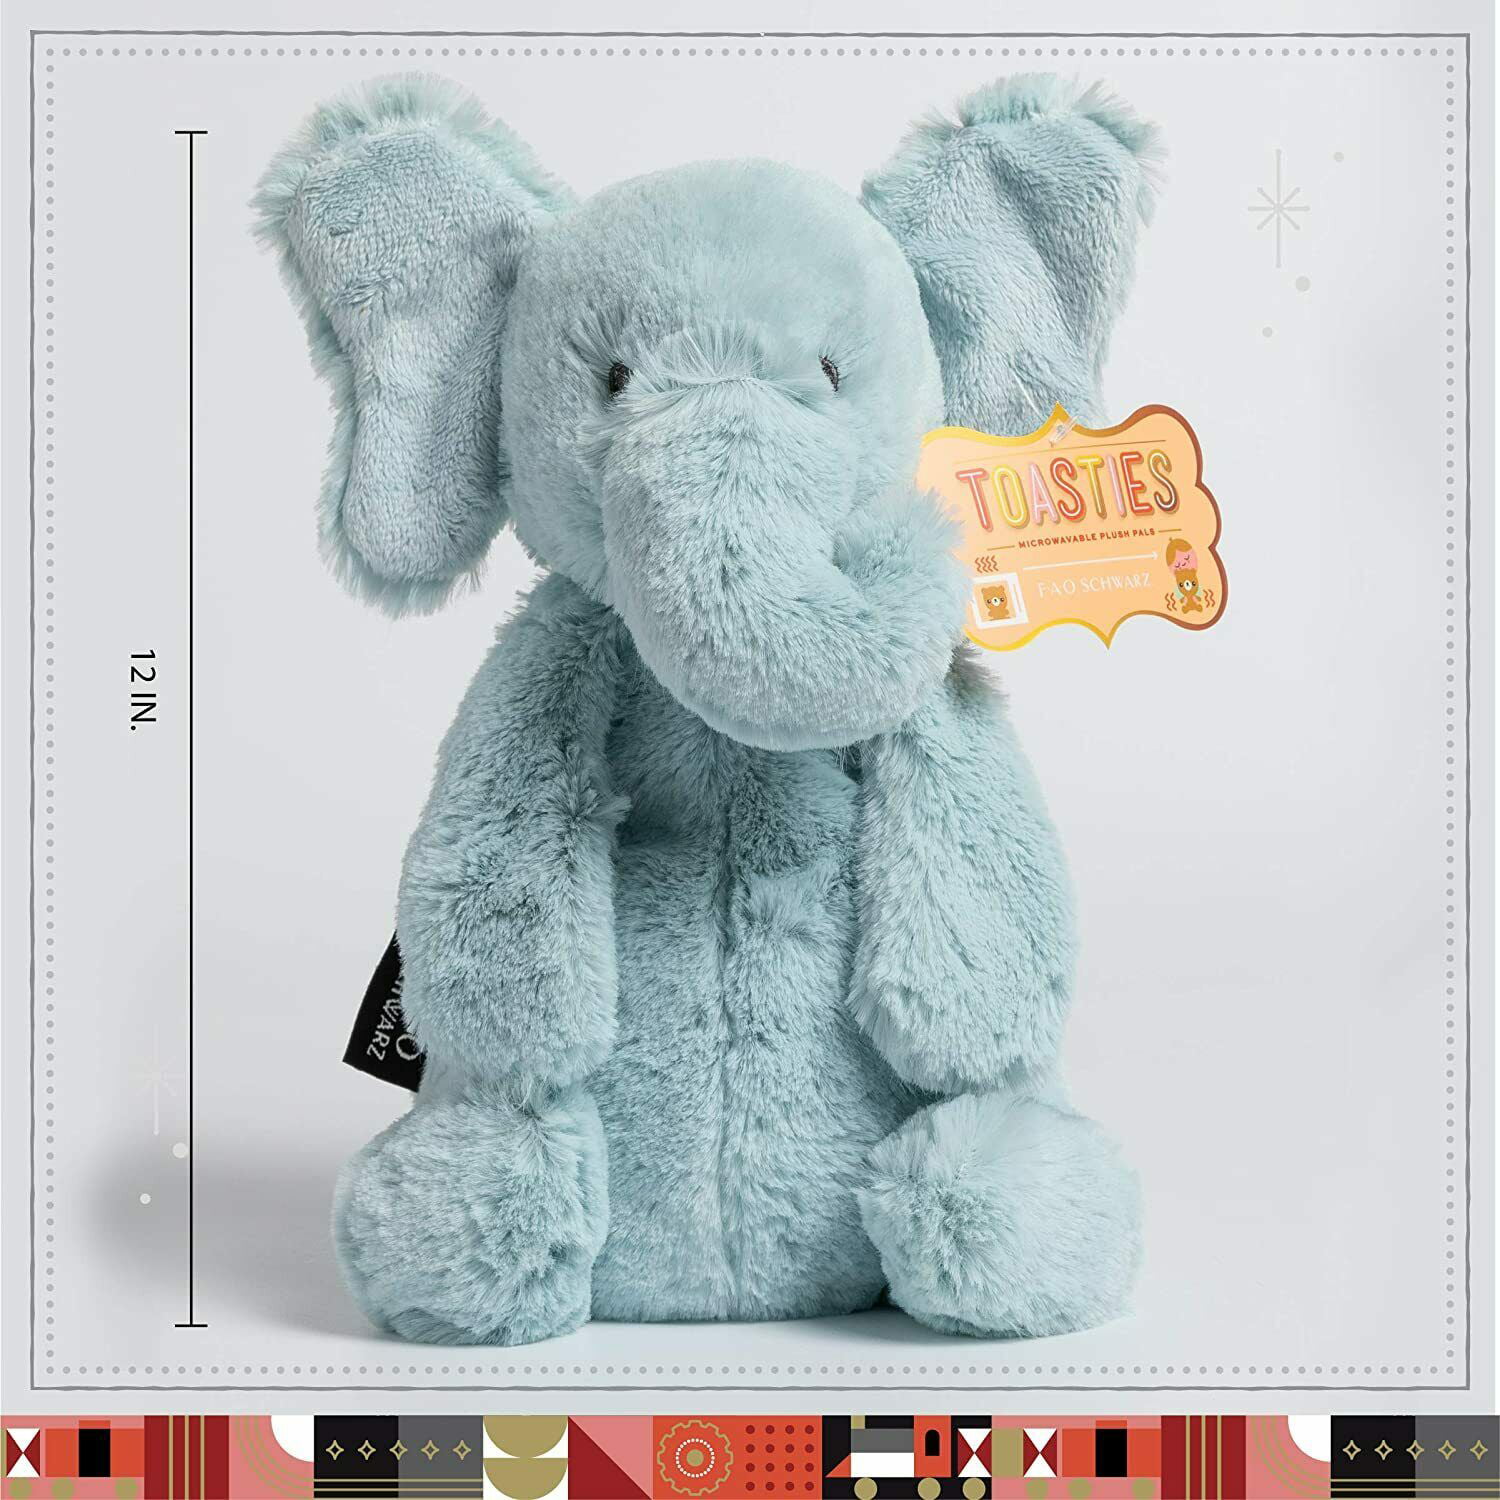 Elephant FAO Schwarz Toasties 12/" Stress Relief Toy Plush